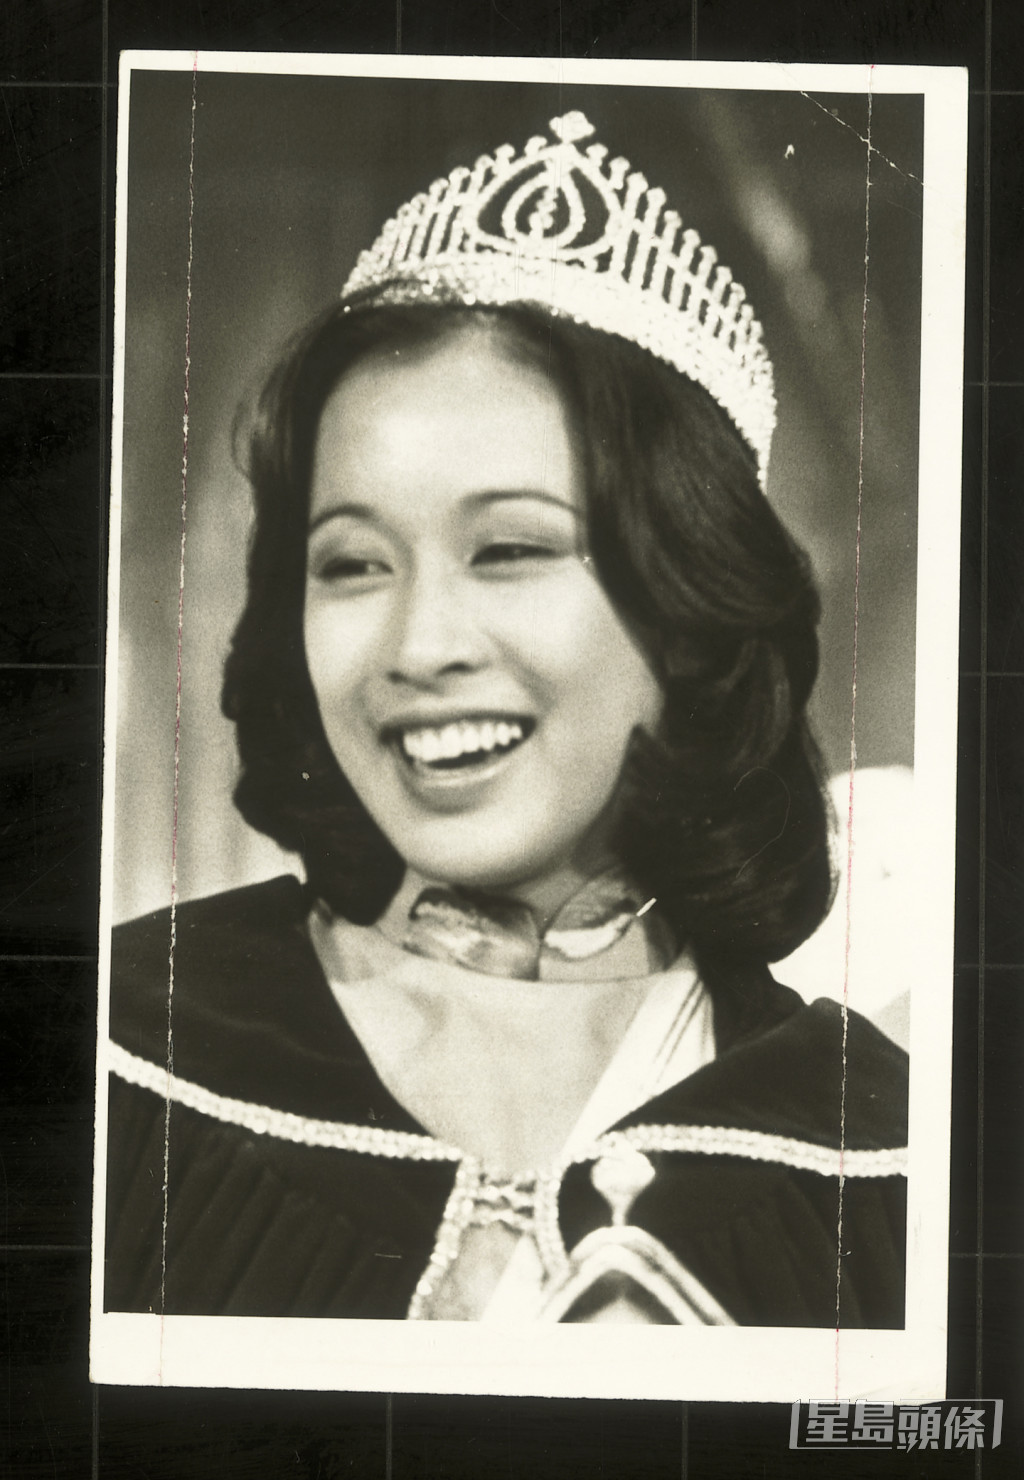 朱玲玲是1977年香港小姐冠軍及最上鏡小姐，是首位奪得兩個獎項的參賽者。當選後只在娛樂圈發展了很短時間，在無綫電視拍過一部電視劇《瑪麗關77》，客串過電視劇《狂潮》。